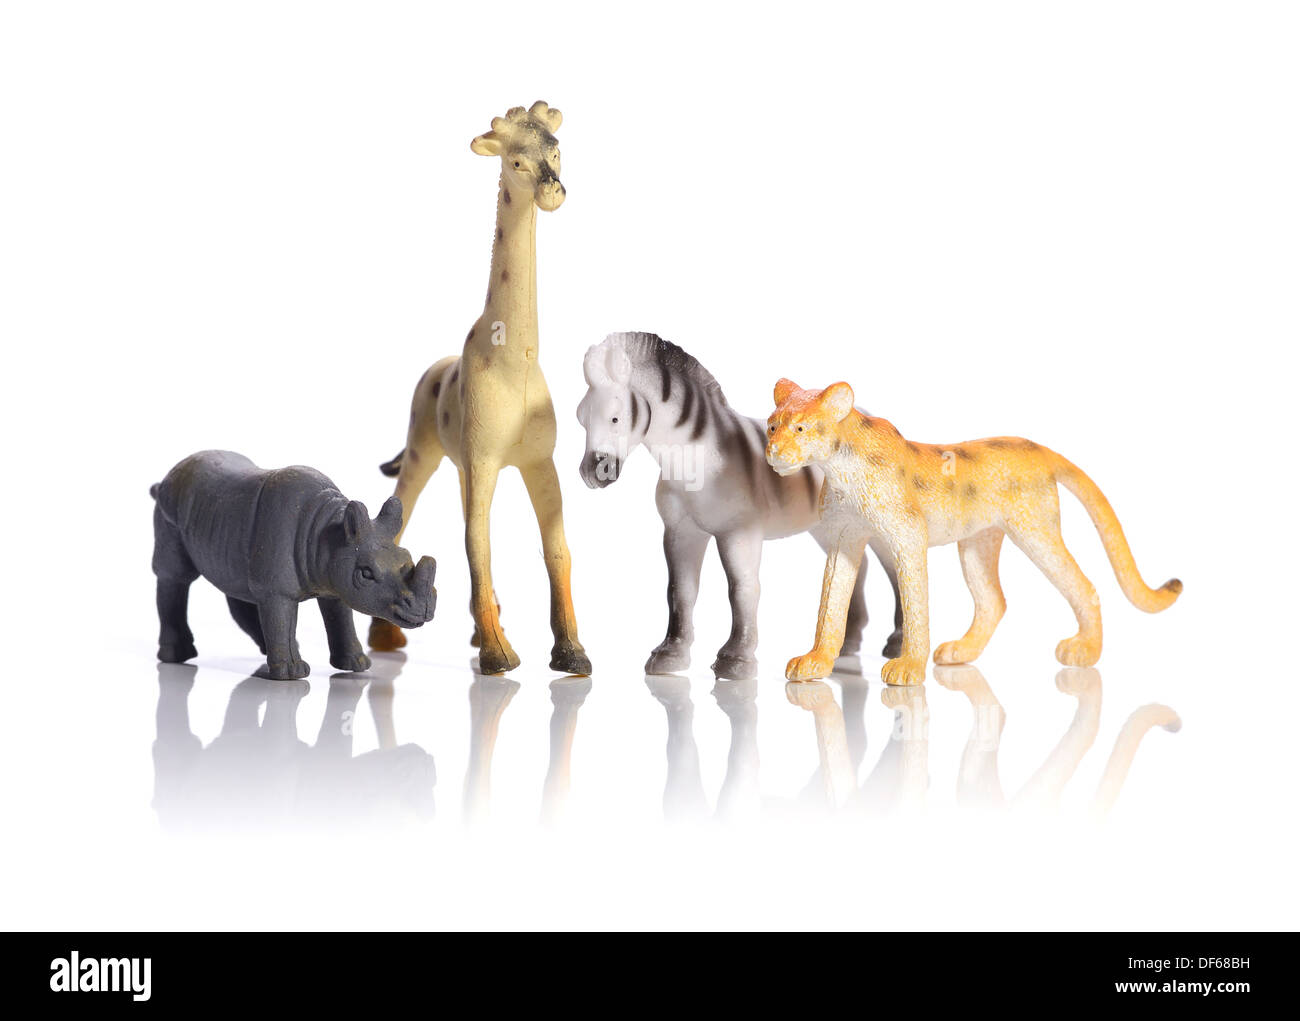 Plastic toy wild animals Stock Photo